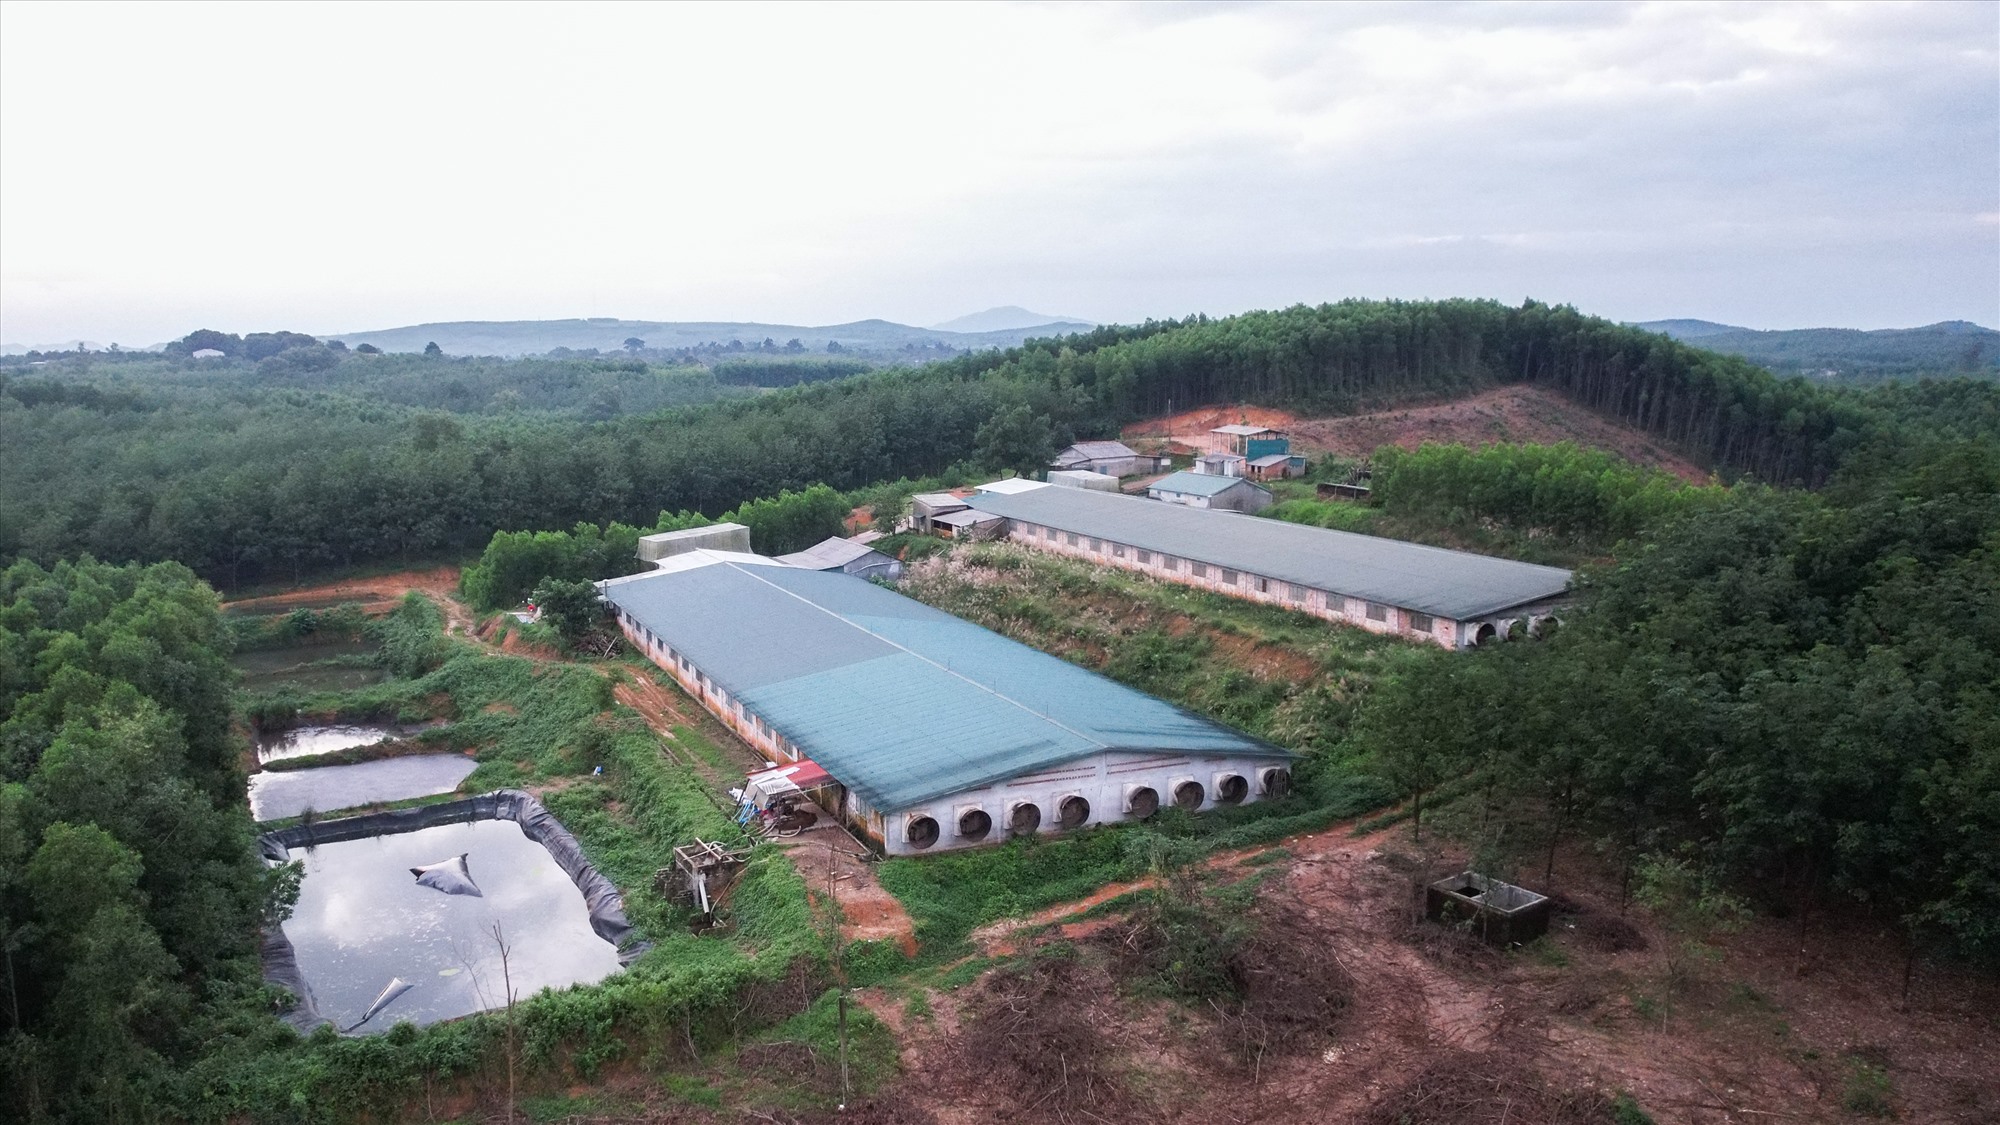 Trang trại chăn nuôi lợn quy mô lớn của ông Trần Văn Sỹ tại xã Cam Chính, huyện Cam Lộ bị phạt tiền 60 triệu đồng vì hành vi xả nước thải vượt quá quy chuẩn - Ảnh: T.N